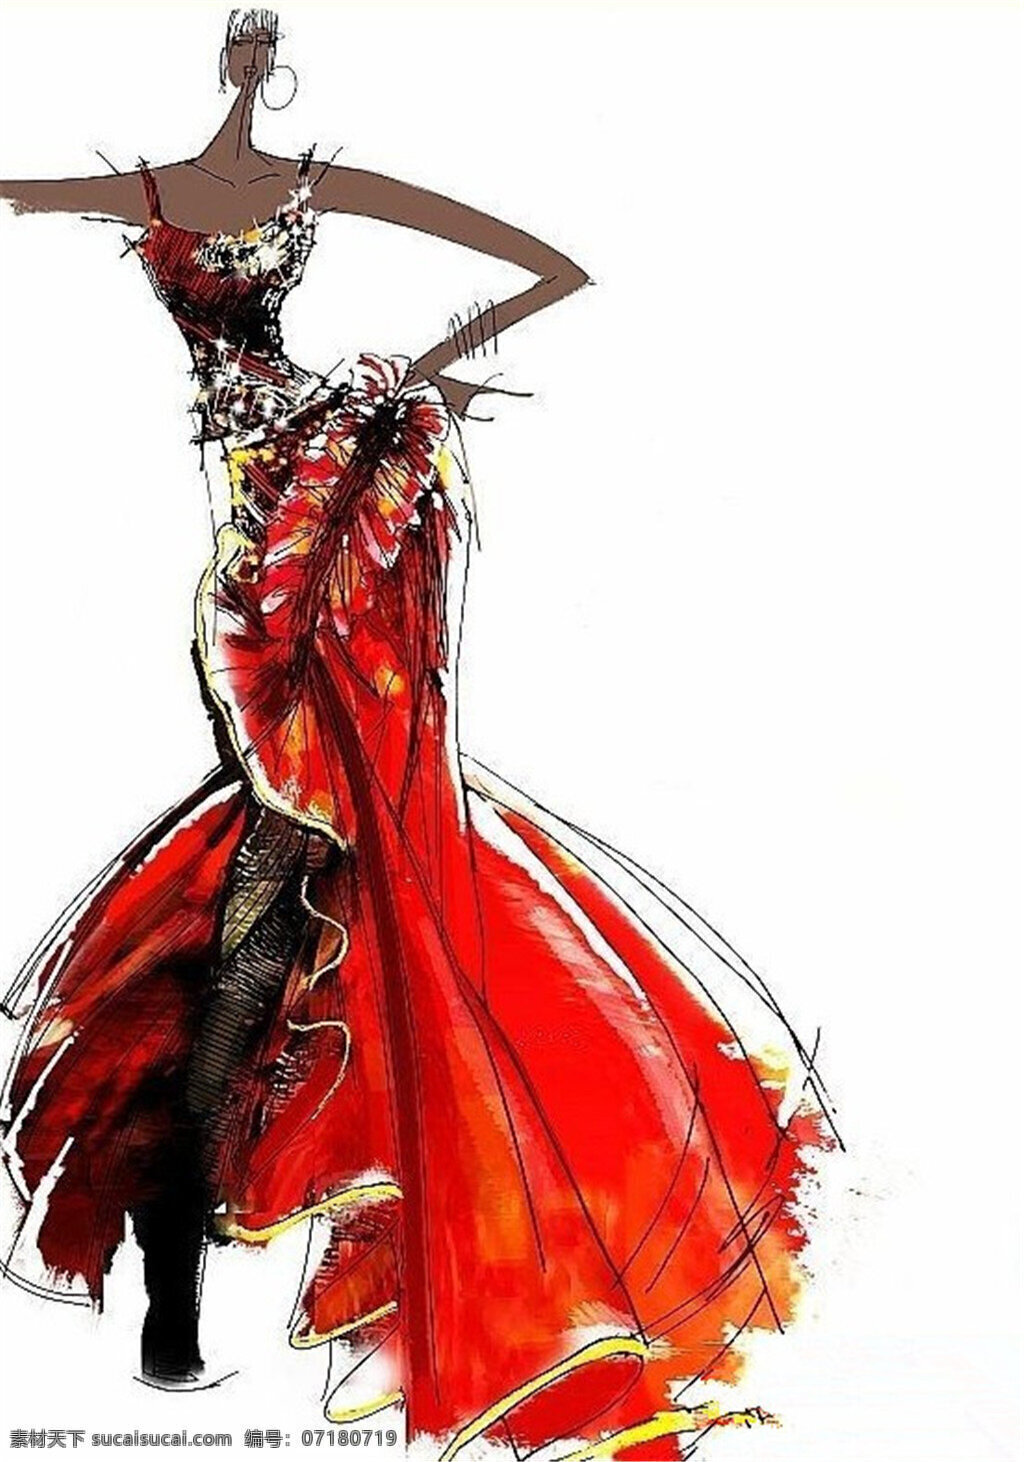 红色 吊带 长裙 设计图 服装设计 时尚女装 职业女装 职业装 女装设计 效果图 短裙 服装 服装效果图 连衣裙